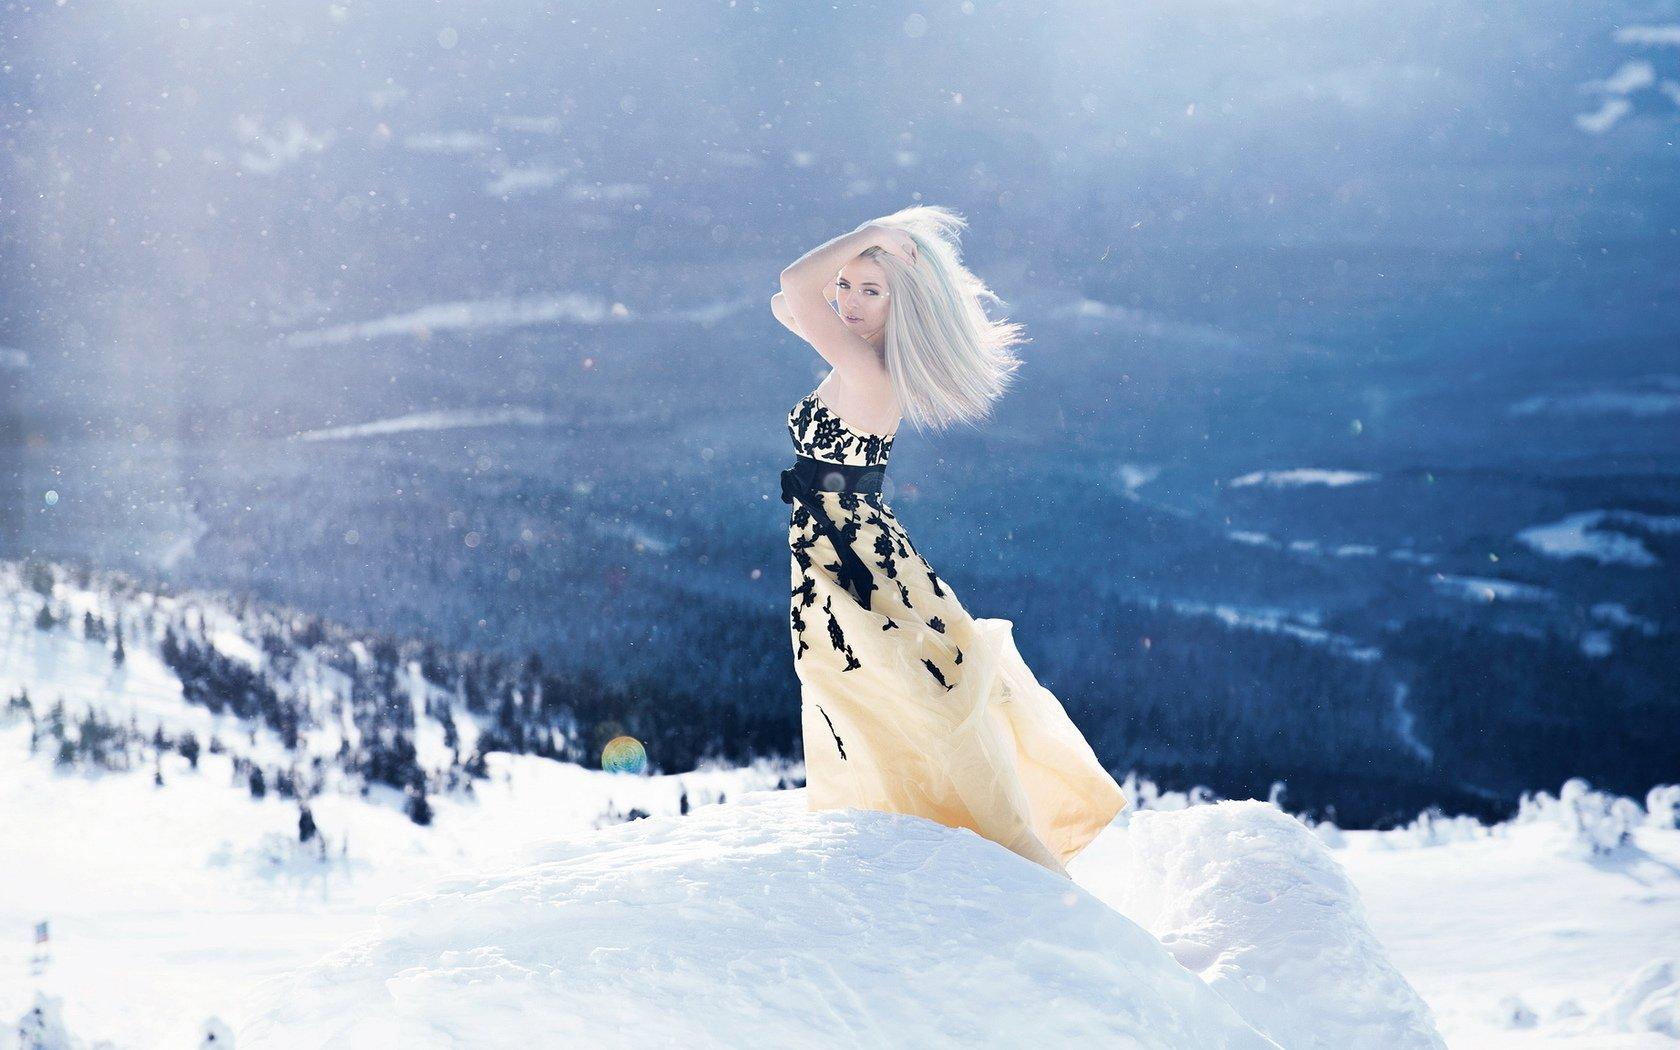 Красивая женщина на снежном курорте, вид сзади :: Стоковая фотография ::  Pixel-Shot Studio